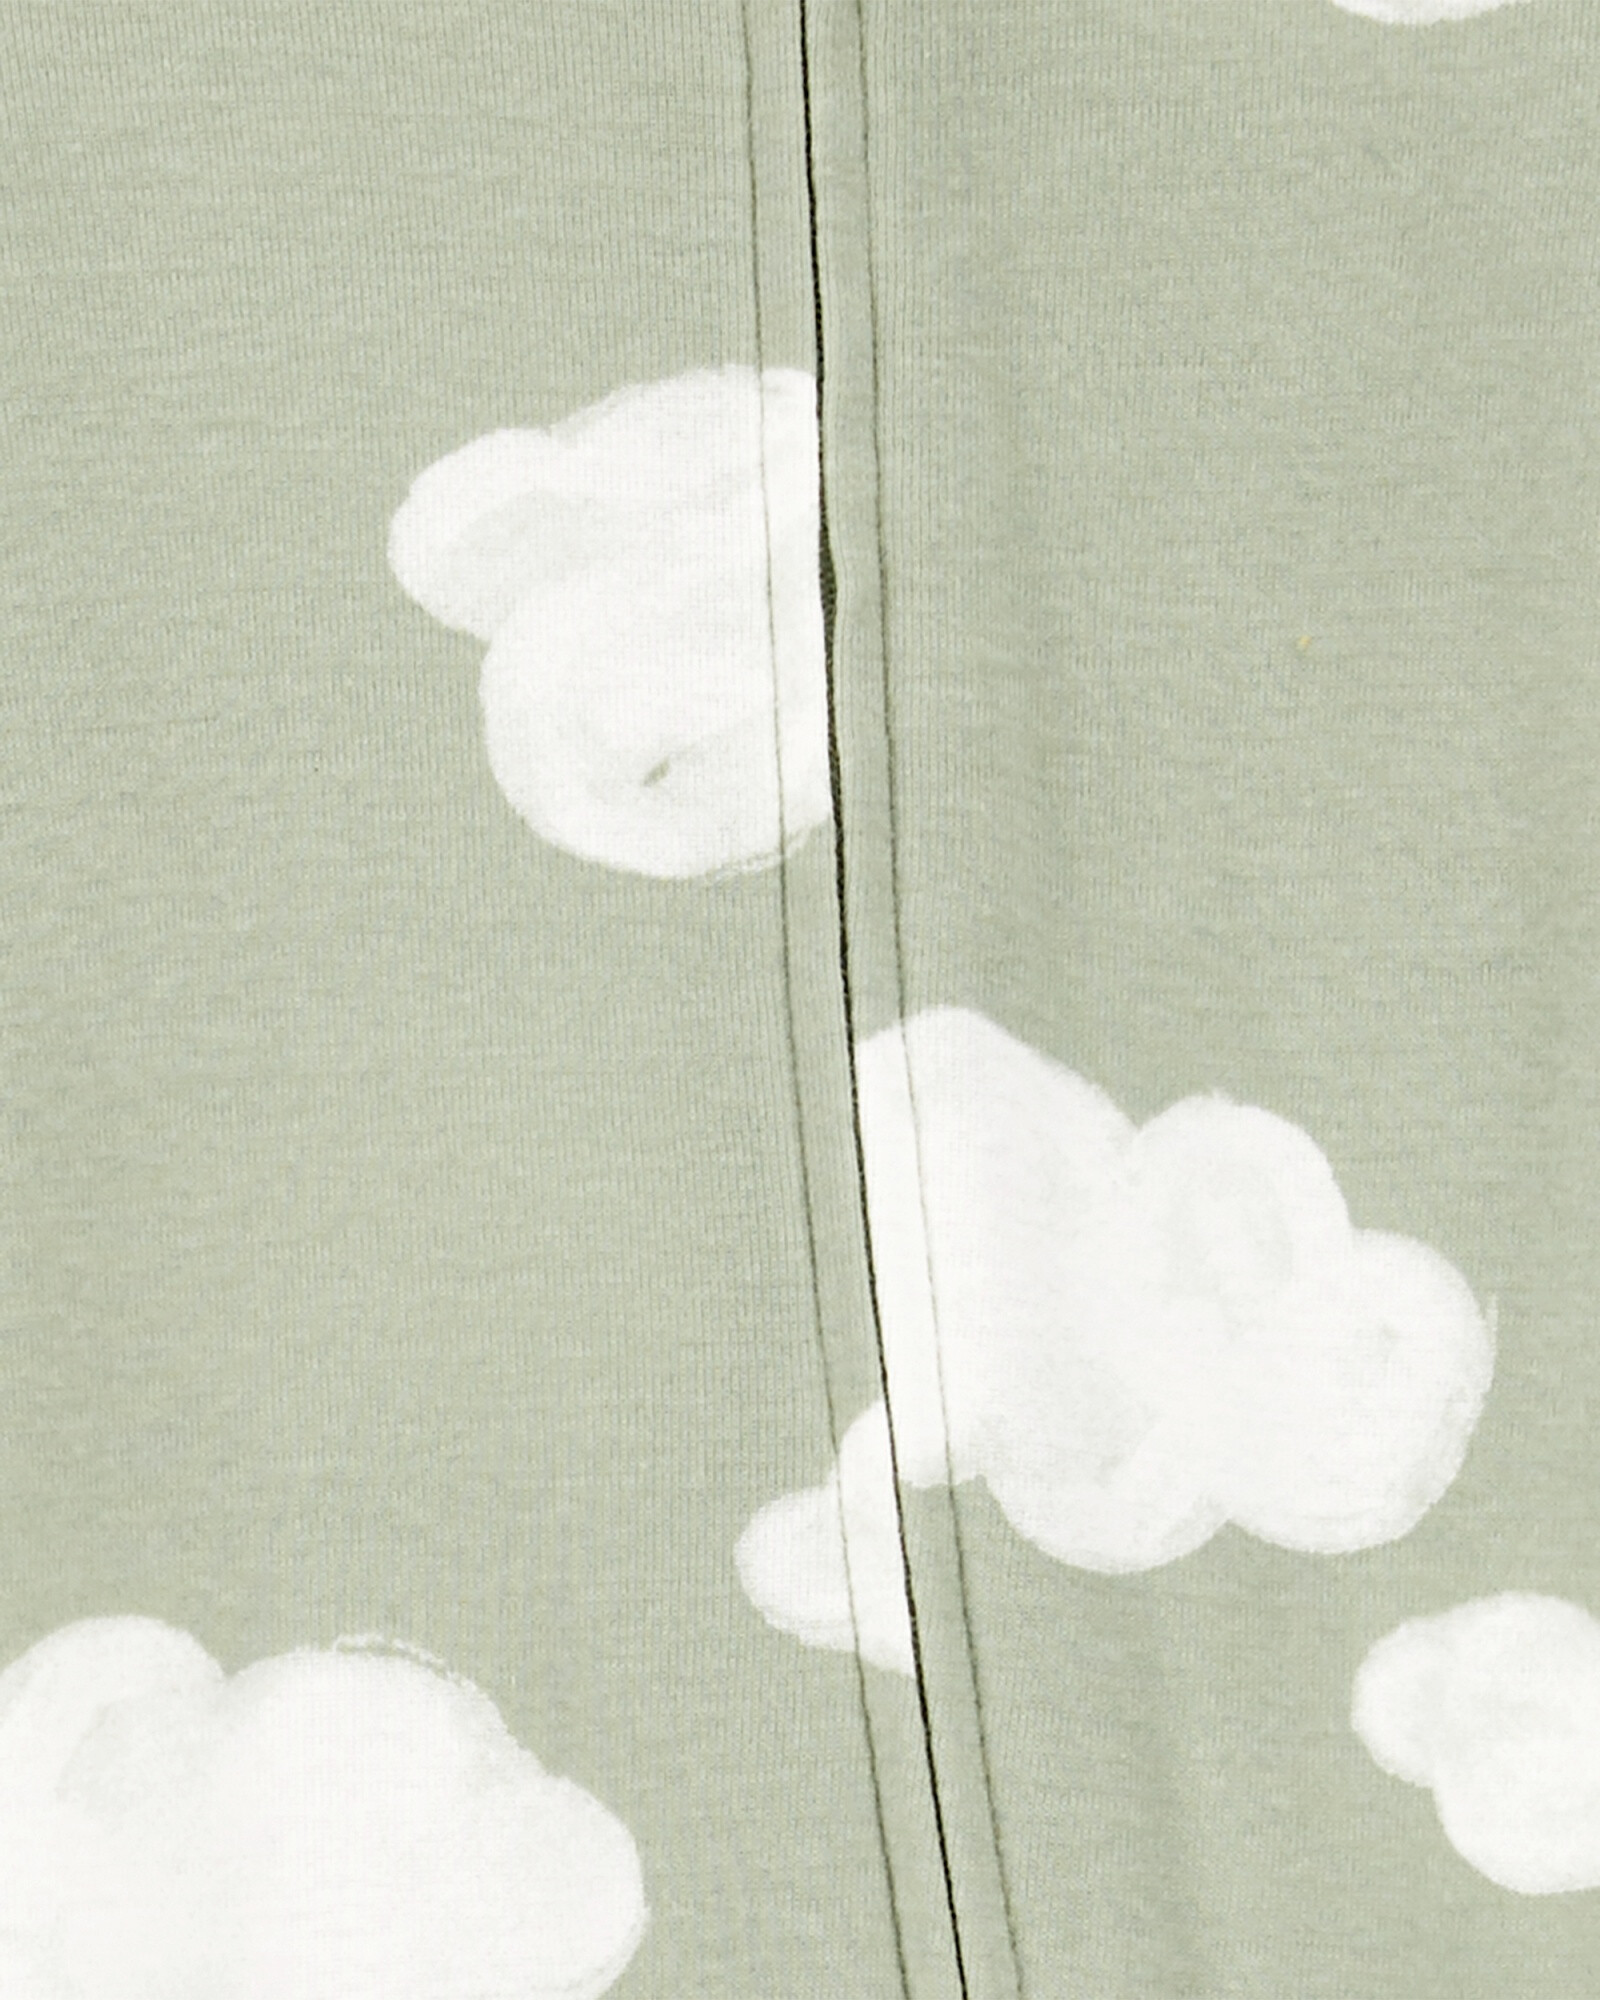 Pijama una pieza de algodón, con pie y gorro, diseño nubes Sin color